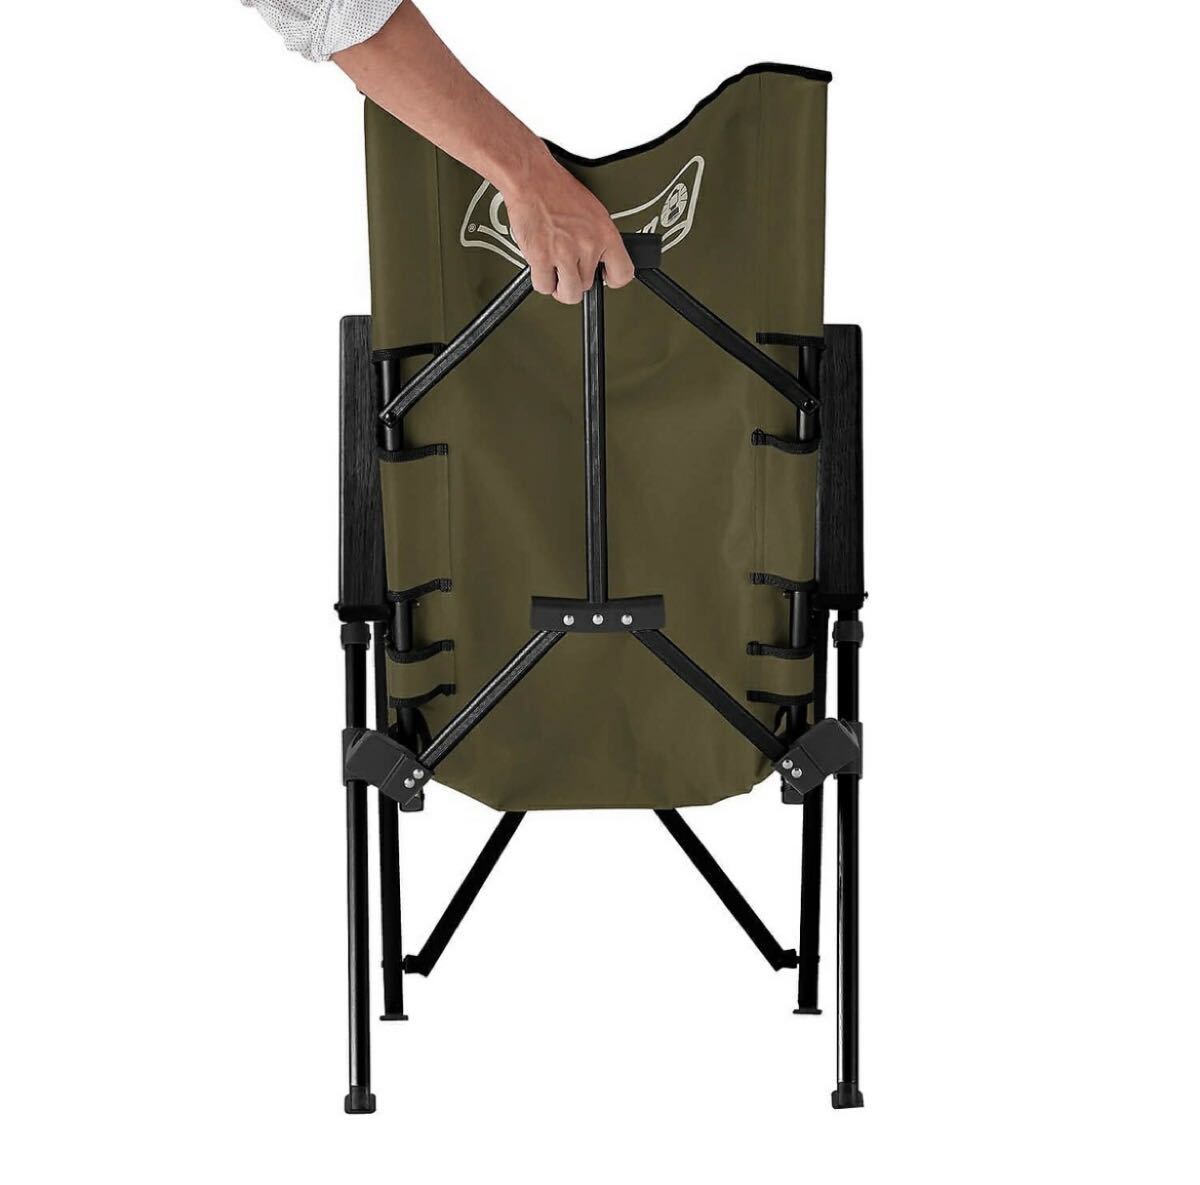 コールマン(COLEMAN) レイチェア(オリーブ) キャンプ用品 ファミリーチェア 椅子 オリーブ 2脚